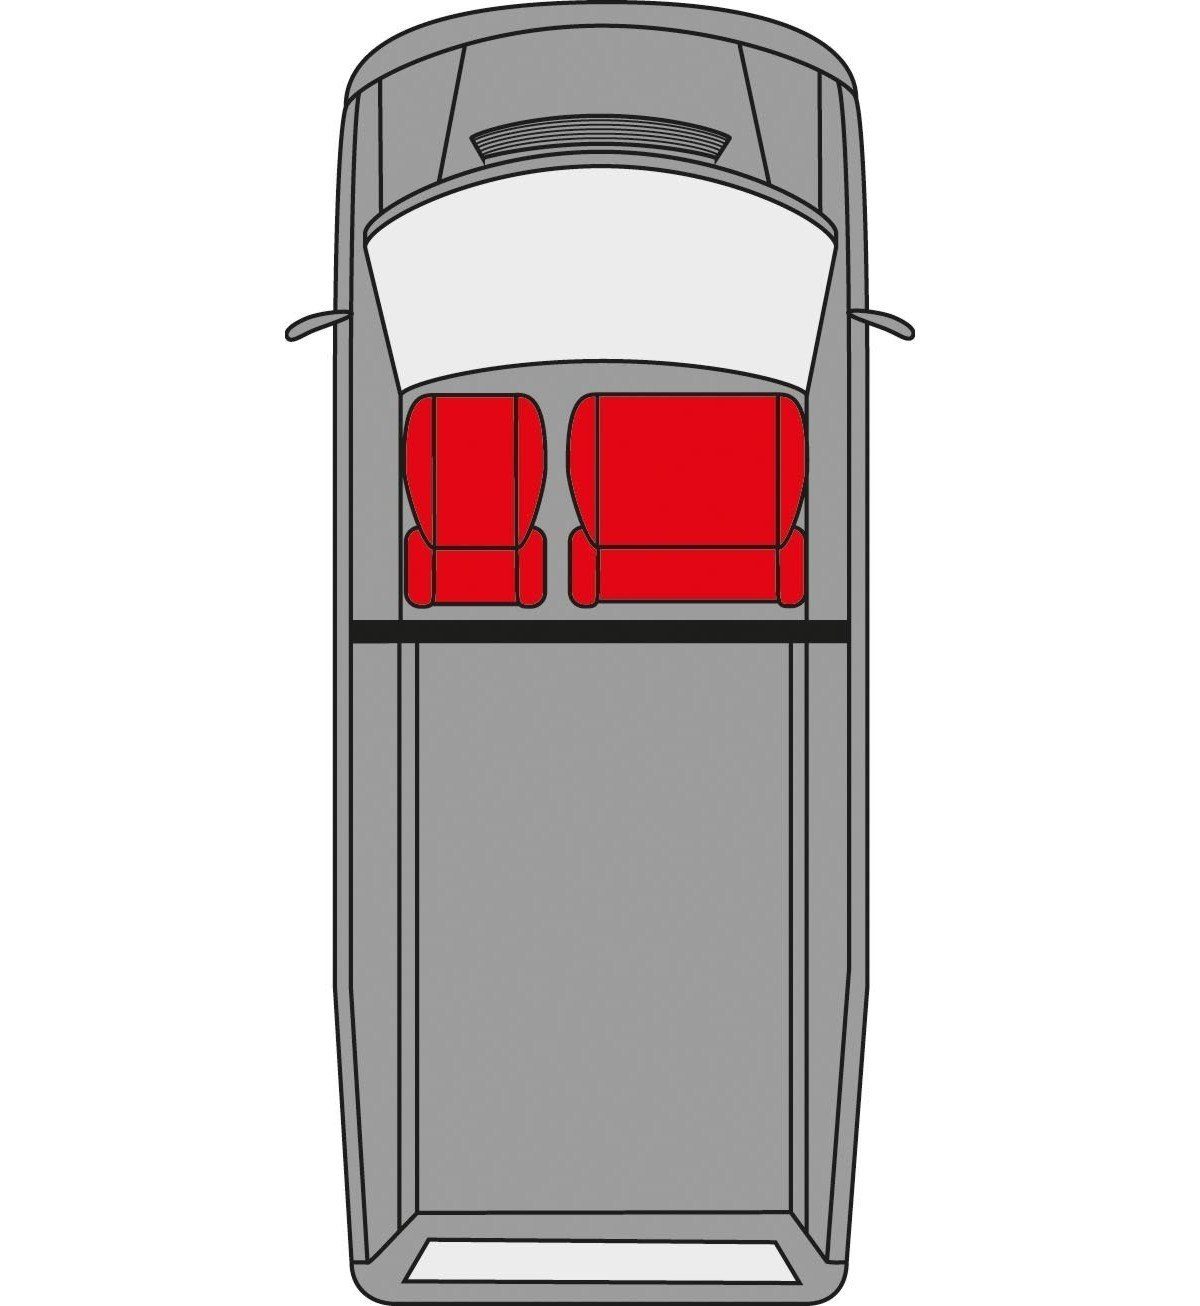 WALSER Autositzbezug Sitzbezug für Mercedes Vito W639 Einzelsitz+